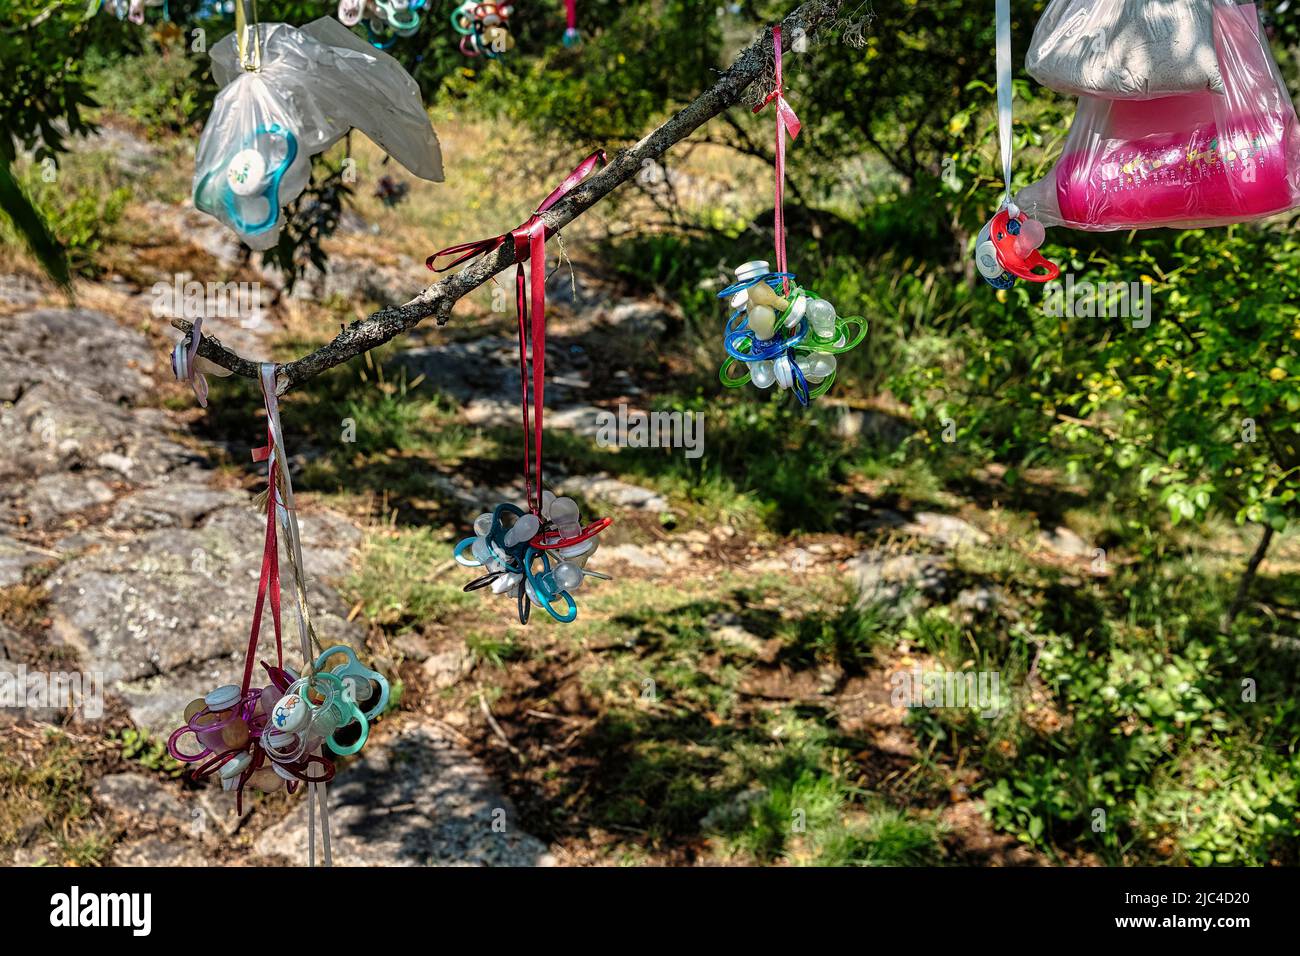 Viele weggeworfene Dummies und bunte Zitzenflaschen in Plastiktüten hängen an einem Baum, Dummy-Baum, Entwöhnung, Schweden Stockfoto